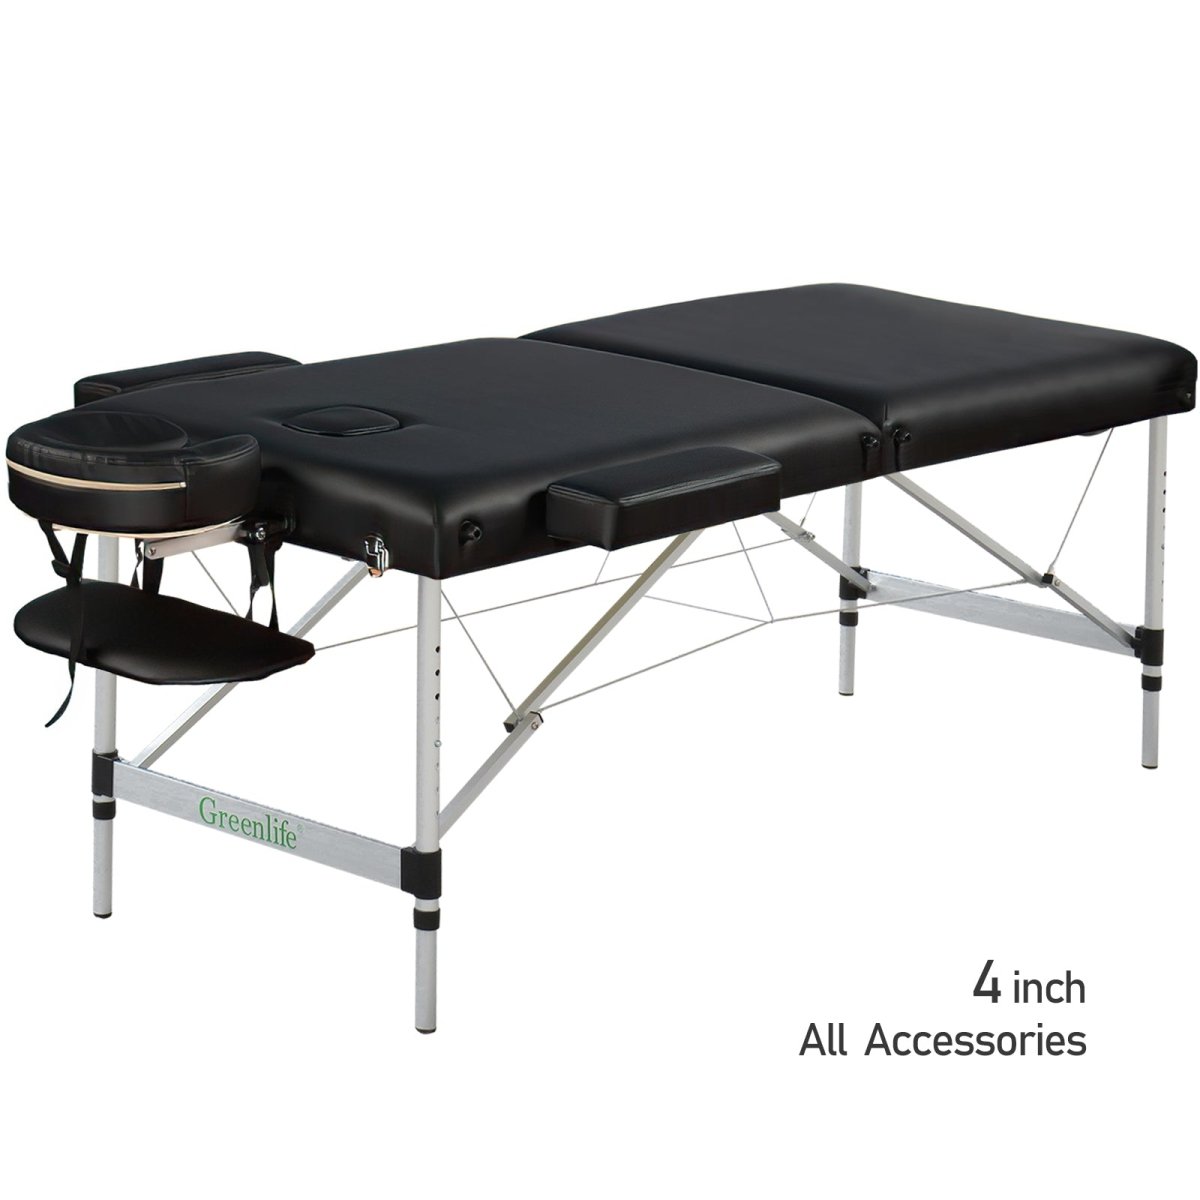 2-Section 4" Aluminum Super Stable Portable Massage Table - MTA121 - GreenLife-Portable Massage Table